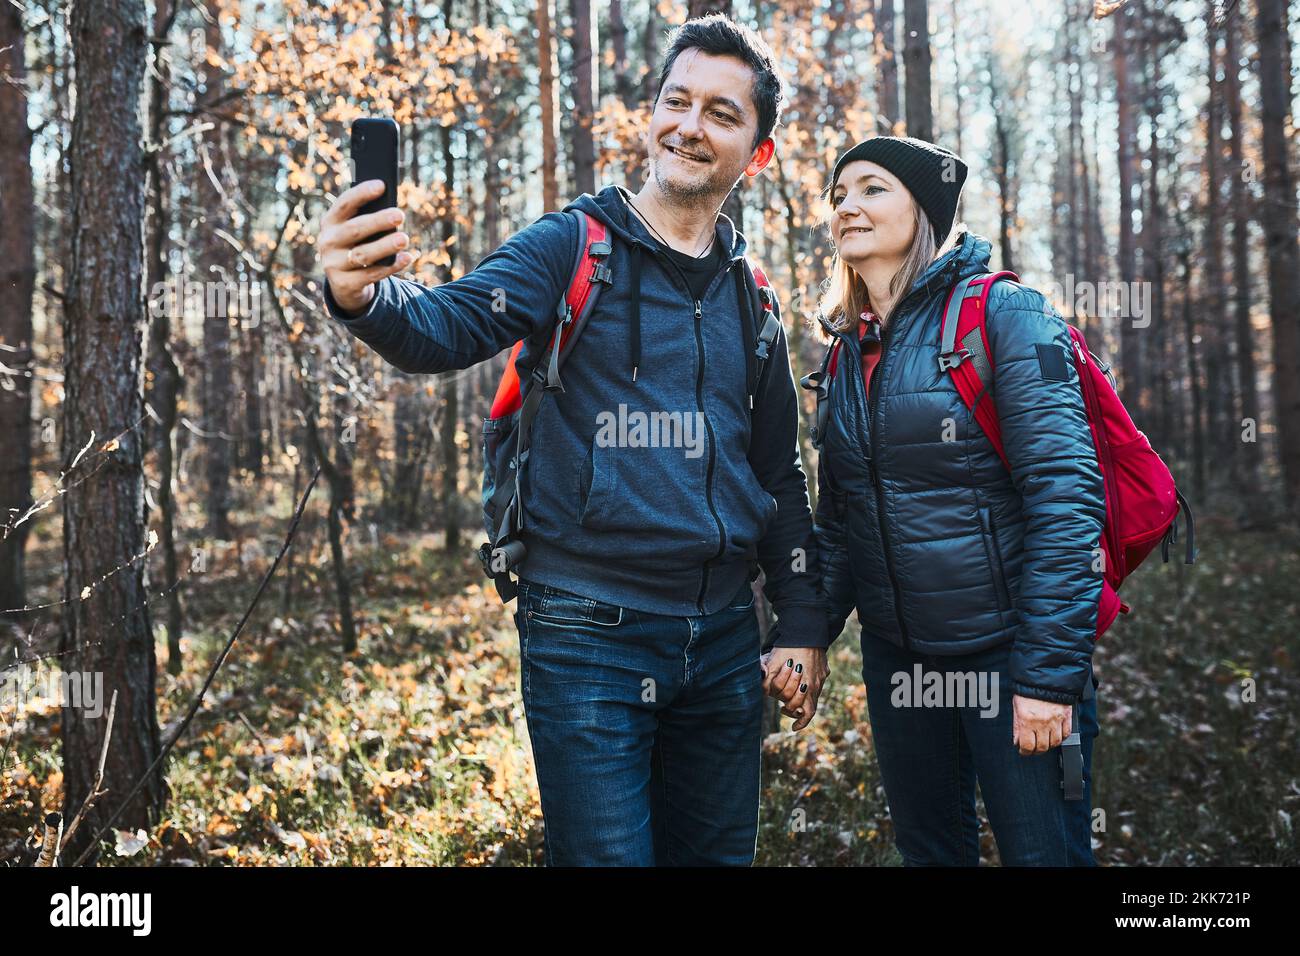 Couple prenant une photo de selfie pendant un voyage de vacances. Randonneurs avec sacs à dos marchant sur le chemin en forêt par beau temps. Loisirs actifs à proximité de la nature Banque D'Images